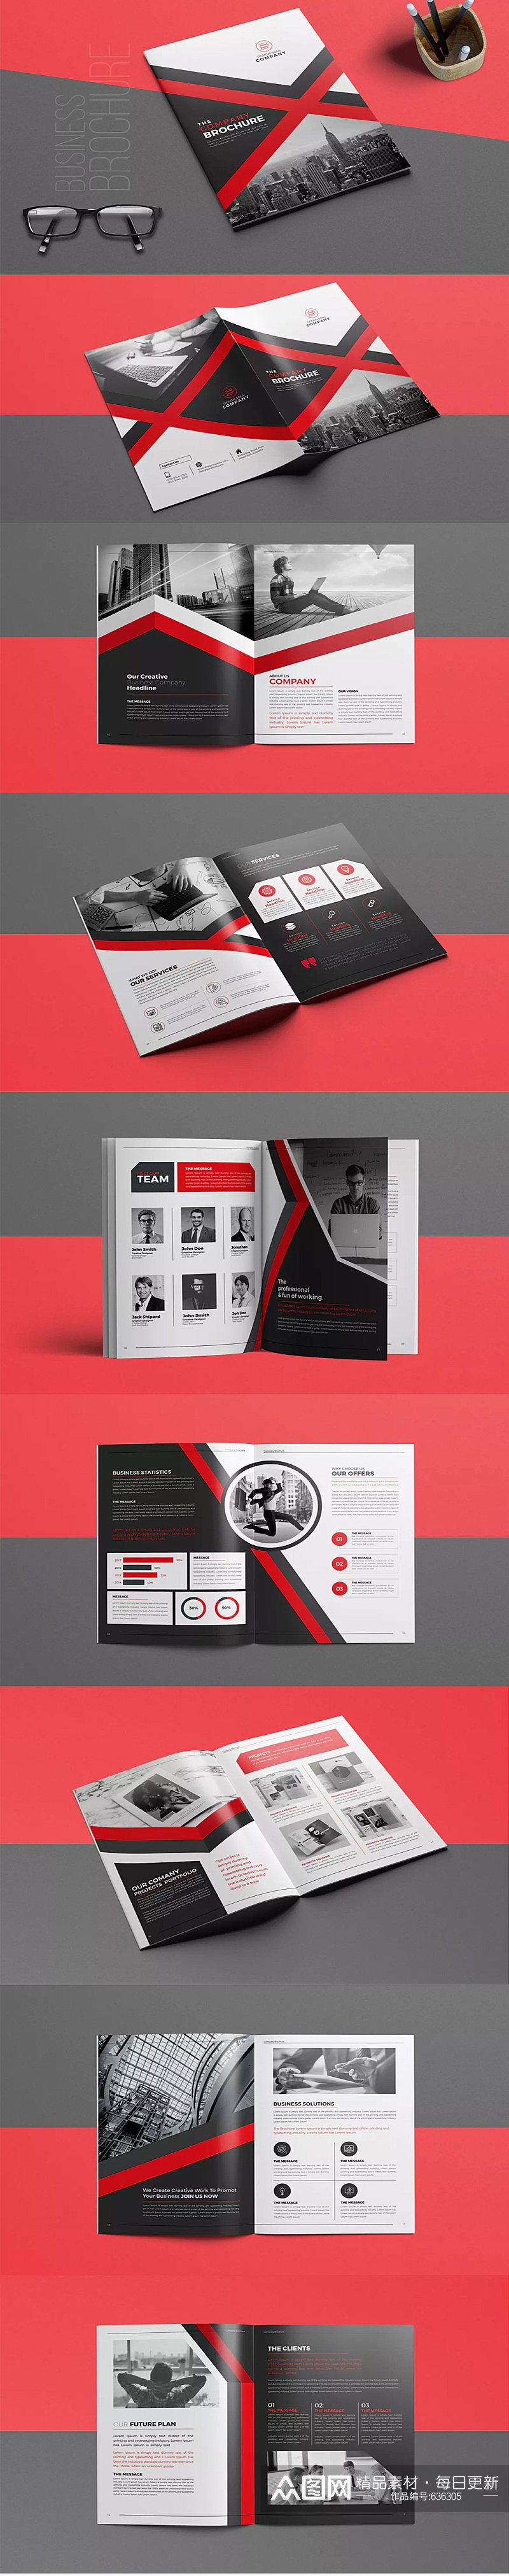 红黑大气企业画册设计素材